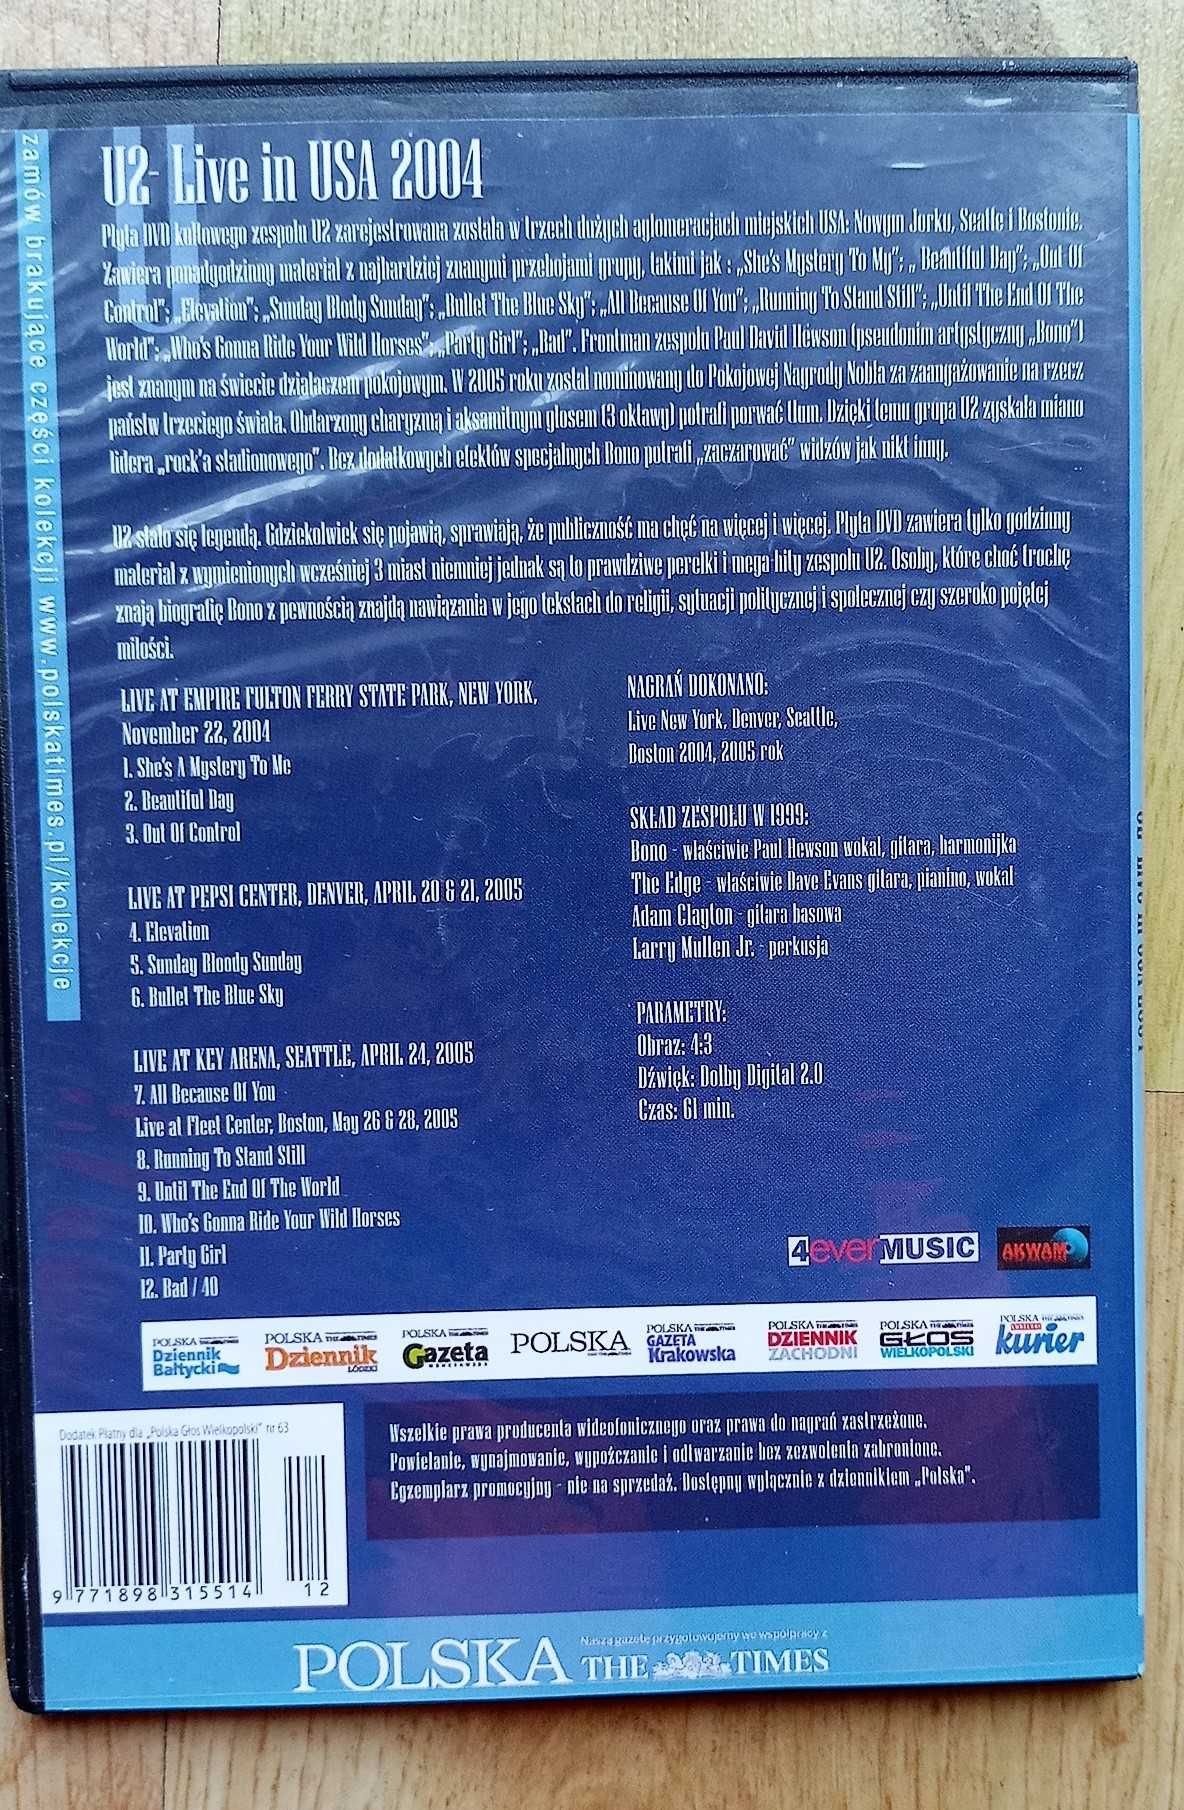 U2 Live in USA DVD